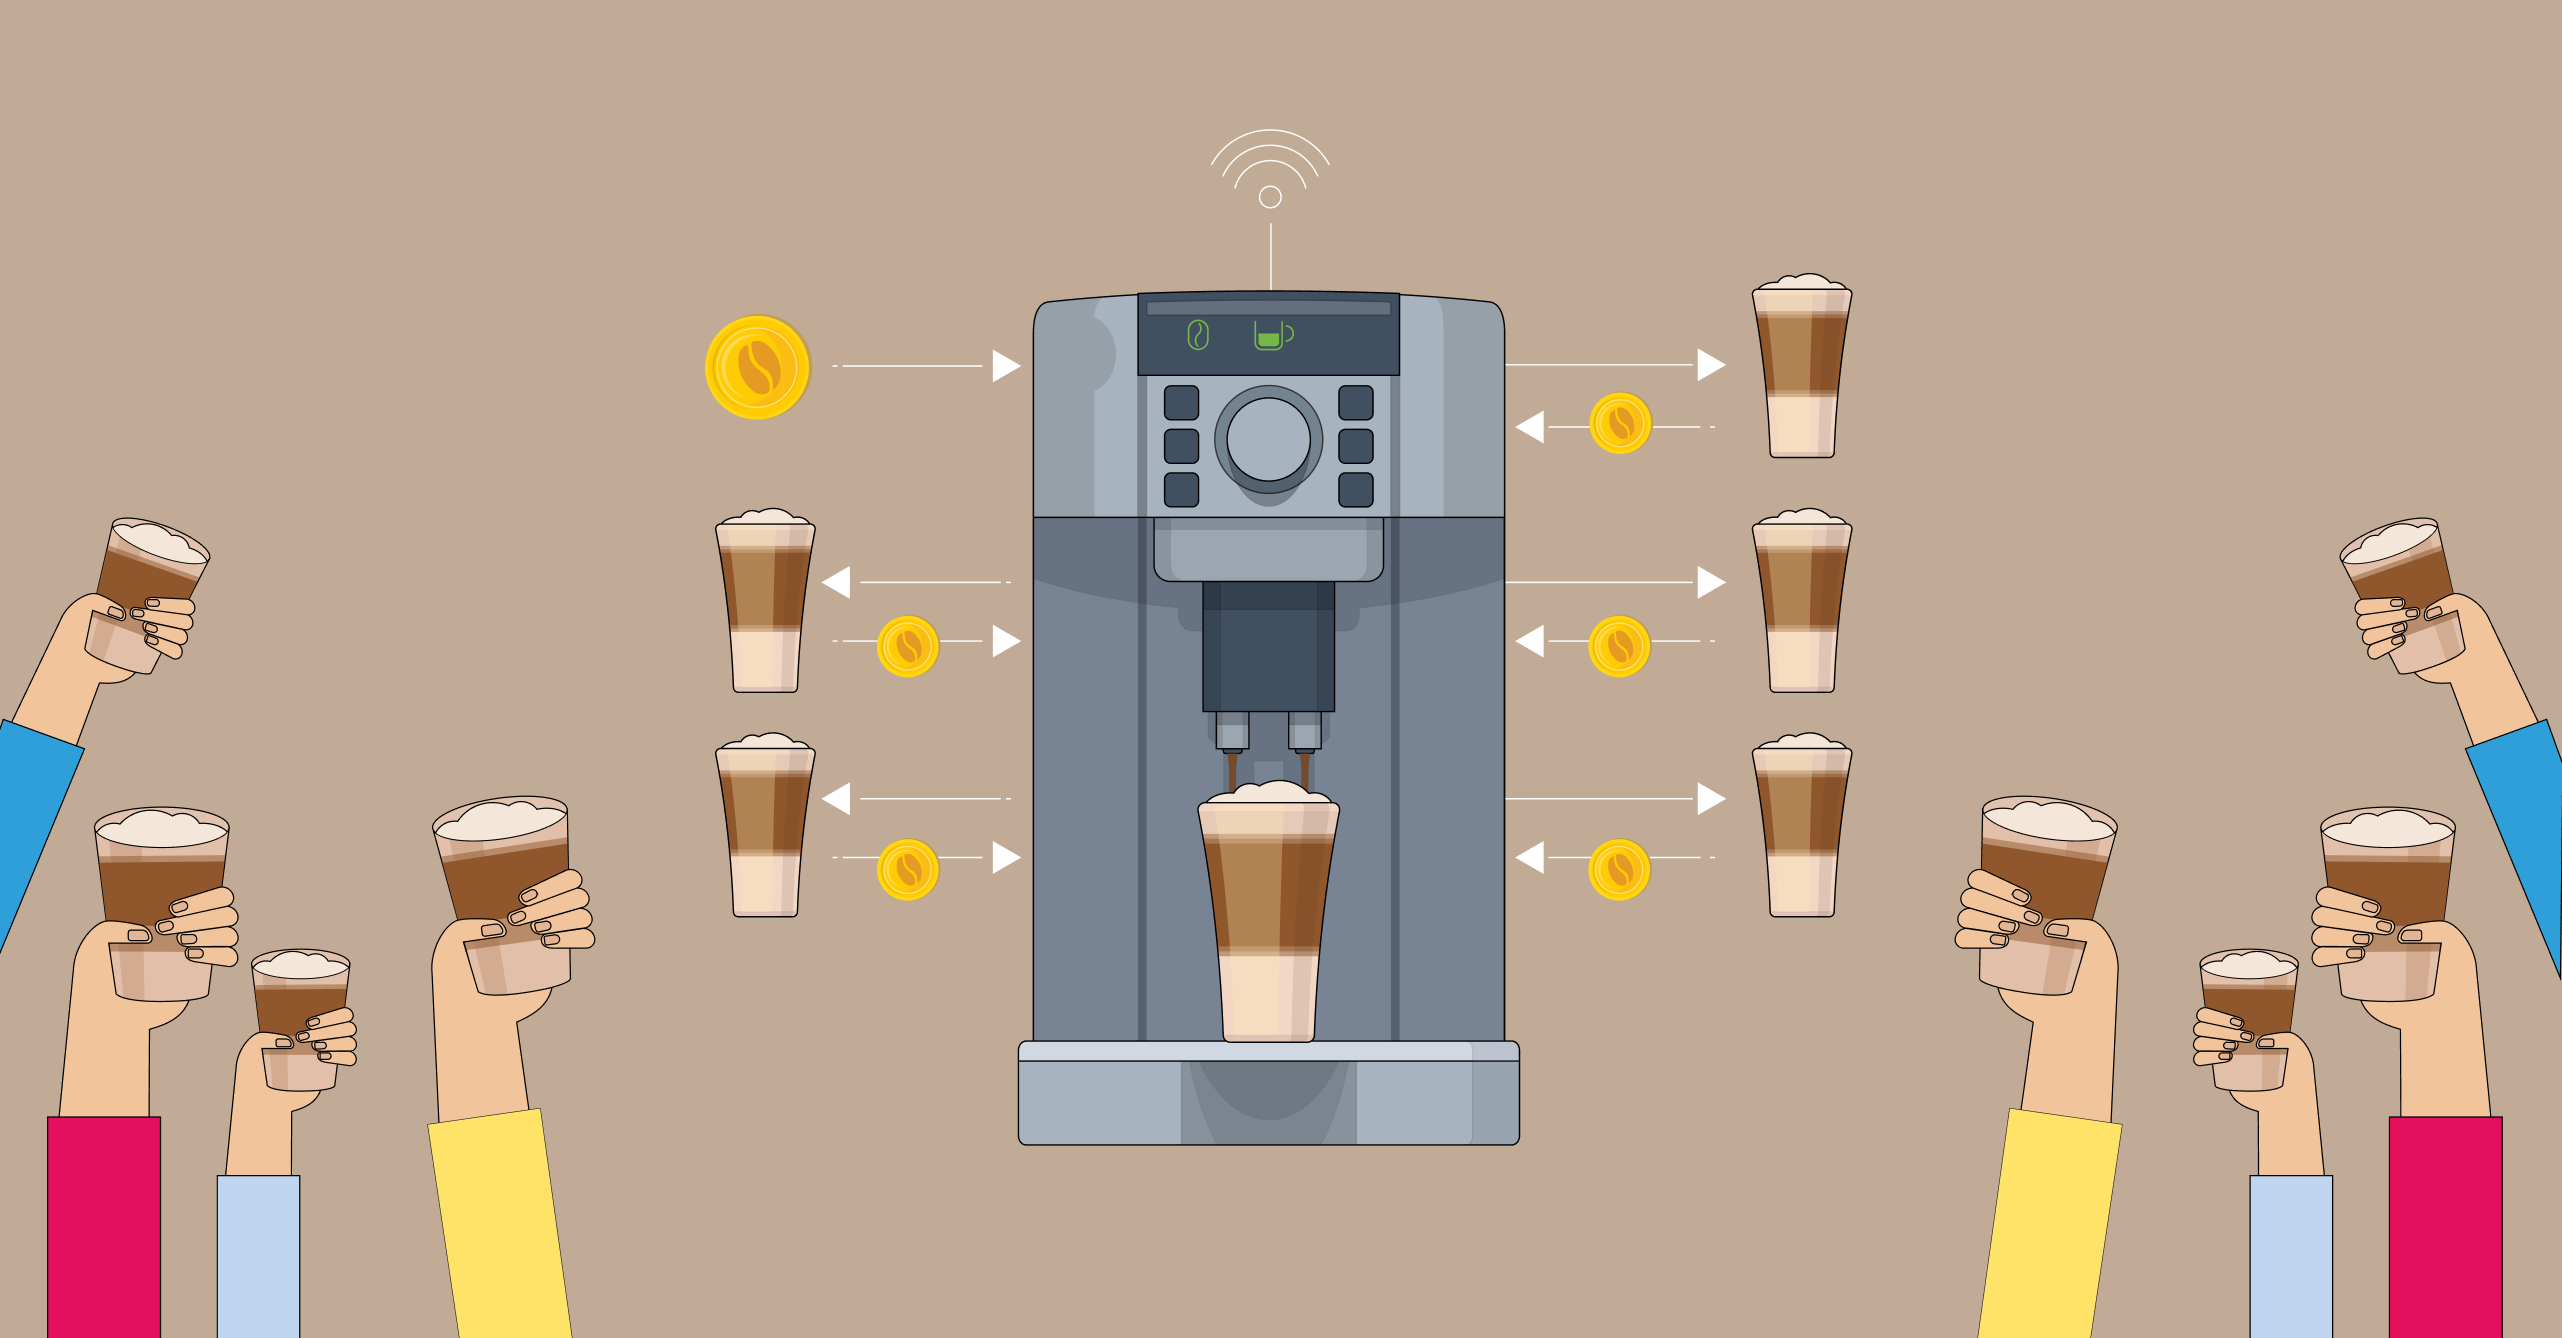 Blockchain-powered smart coffee machine